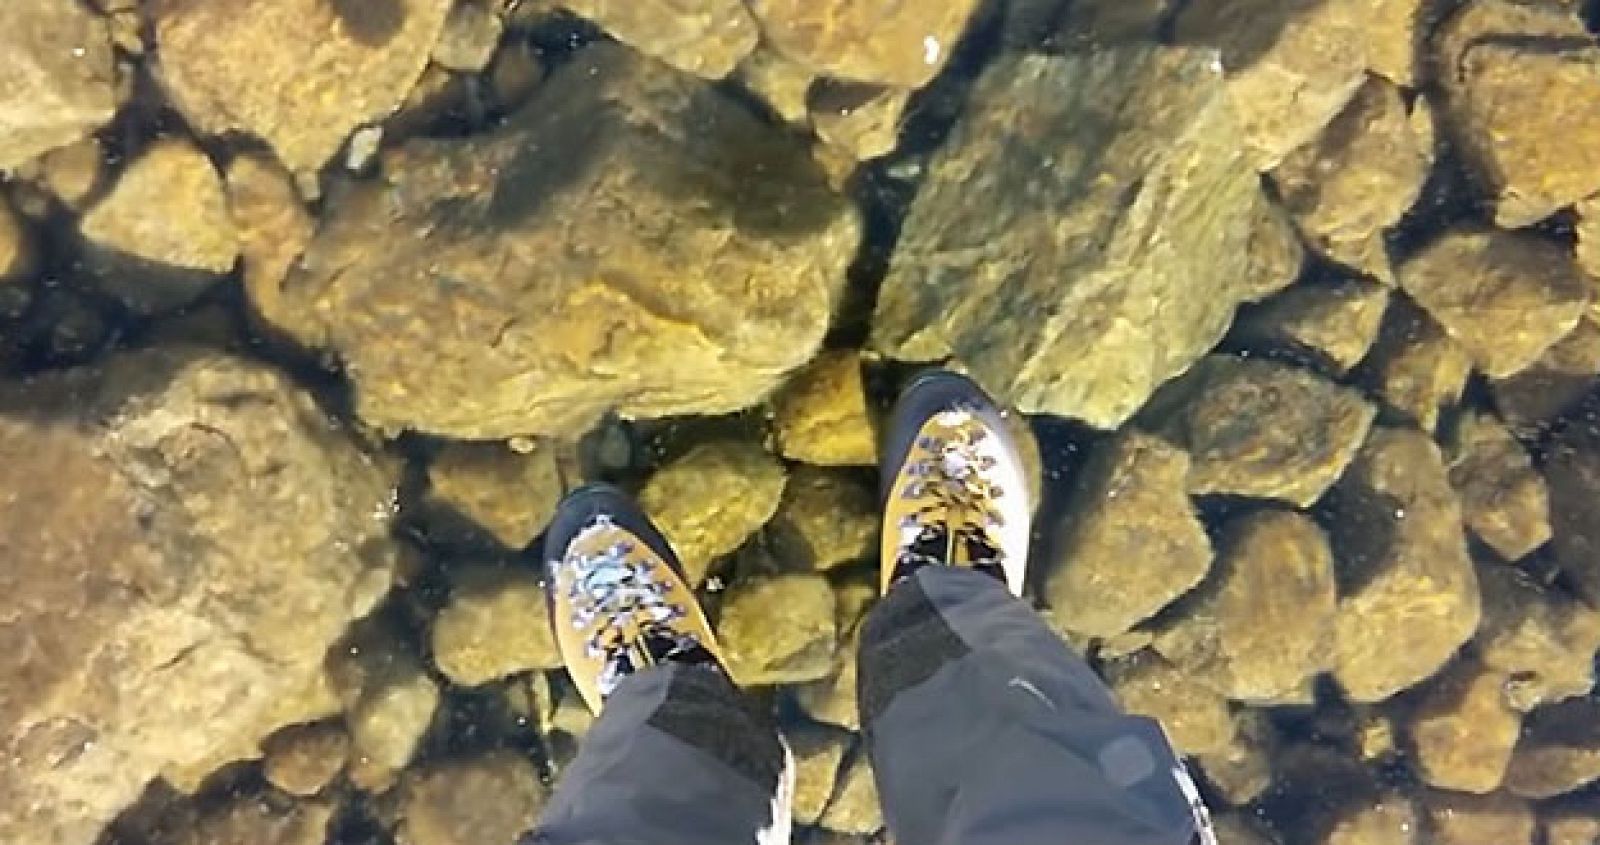 Pantallazo del vídeo grabado en el Velke Hincovo Pleso, un lago de origen glacial de unos escasos 54 metros de profundidad en Eslovaquia.